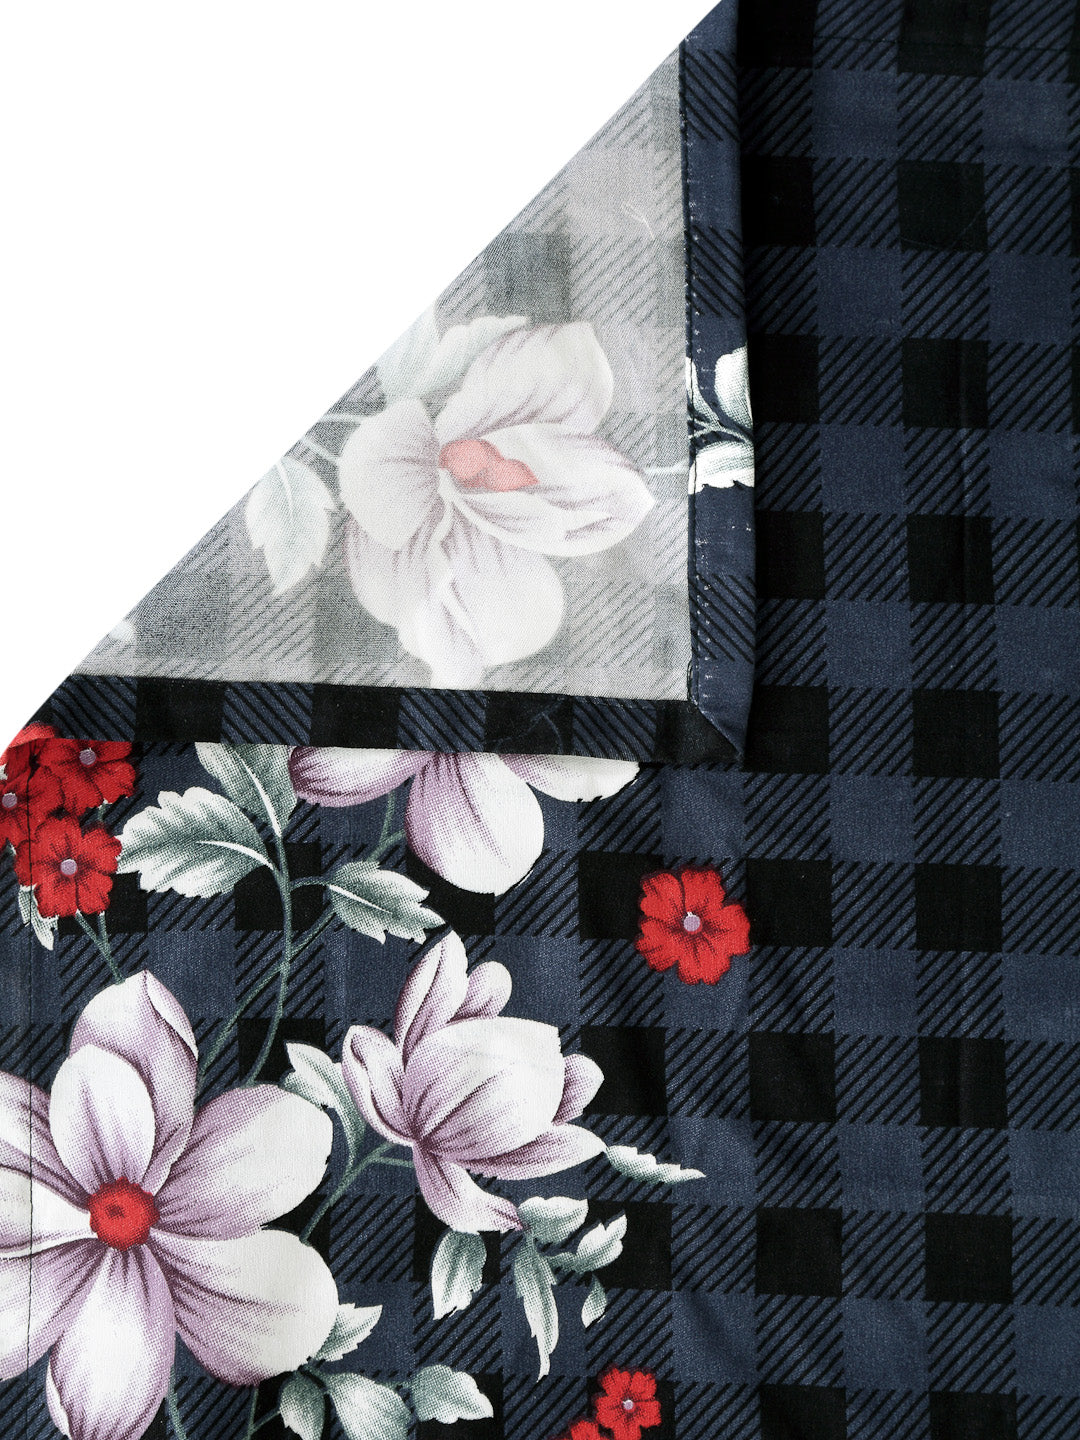 Arrabi Multi Floral TC Polycotton Single Size Bedsheet with 1 Pillow Cover (225 x 150 cm)